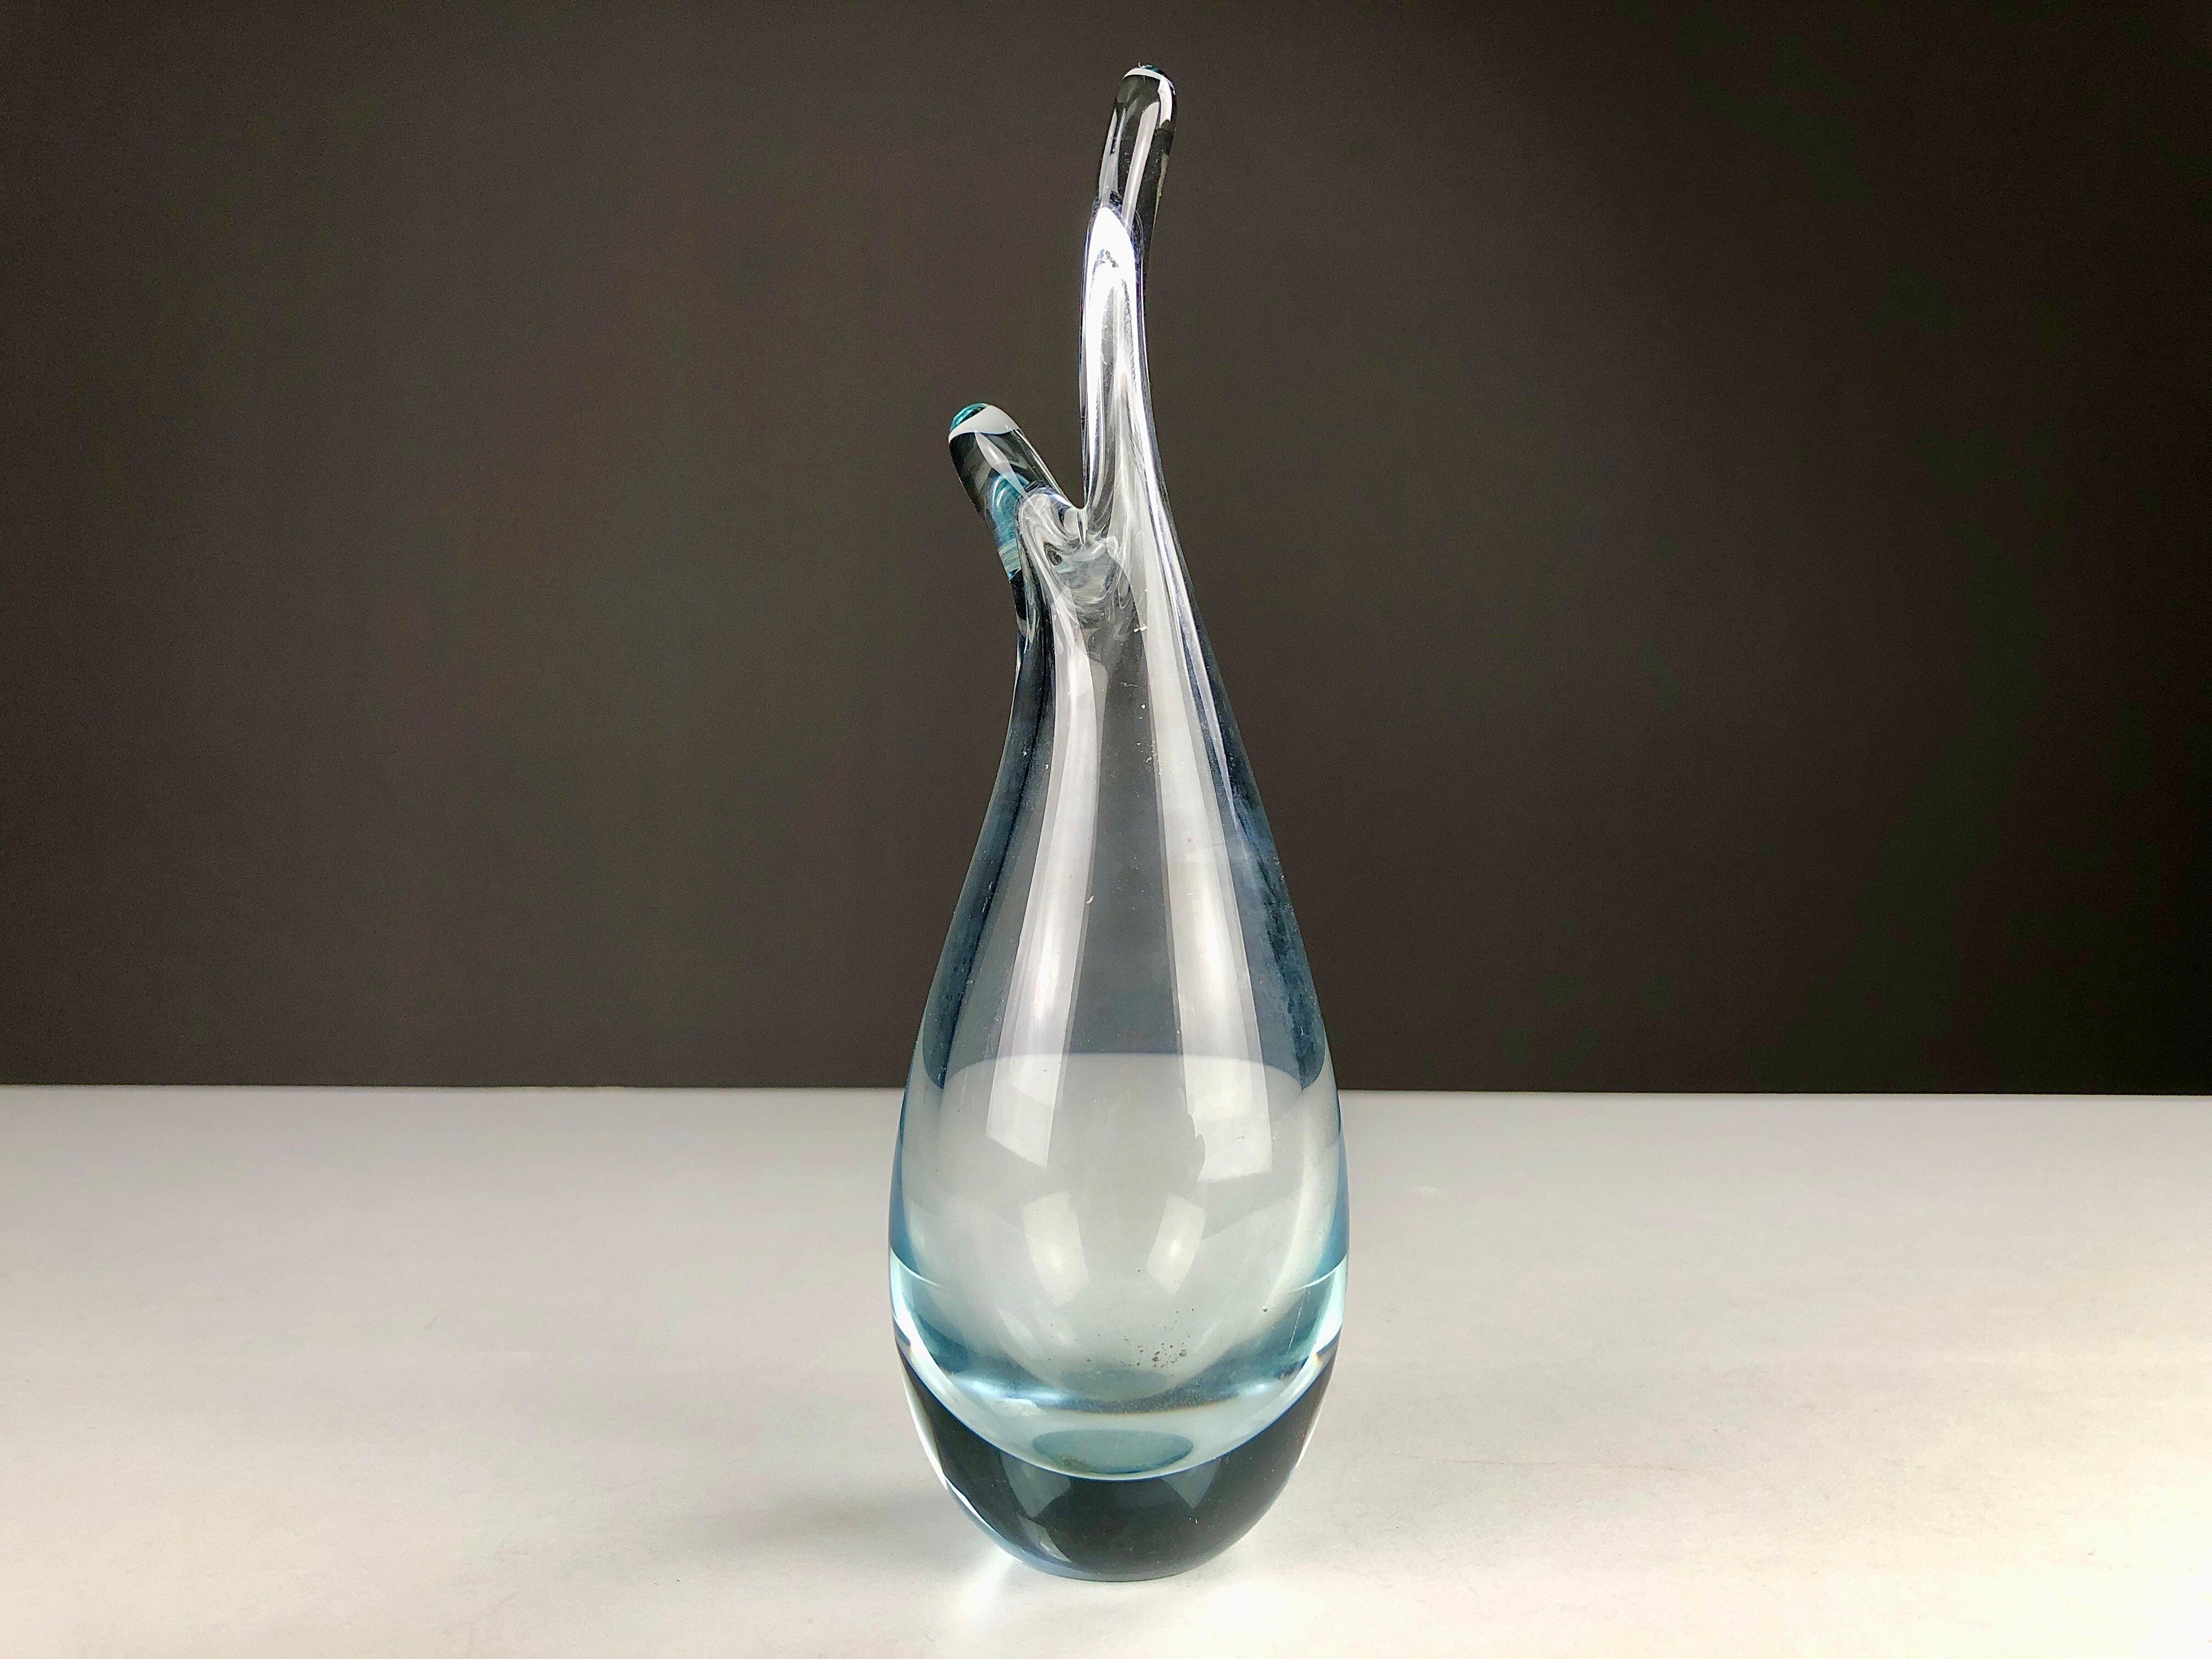 Vase en verre soufflé danois des années 1950 par Per Lütken pour Holmegaard. 

Le vase est gravé de la signature de Per Lütkens, de l'année de production (1958) et du nom de Holmegaard.

Le verrier danois Per Lütken (1916 - 1998) a travaillé chez